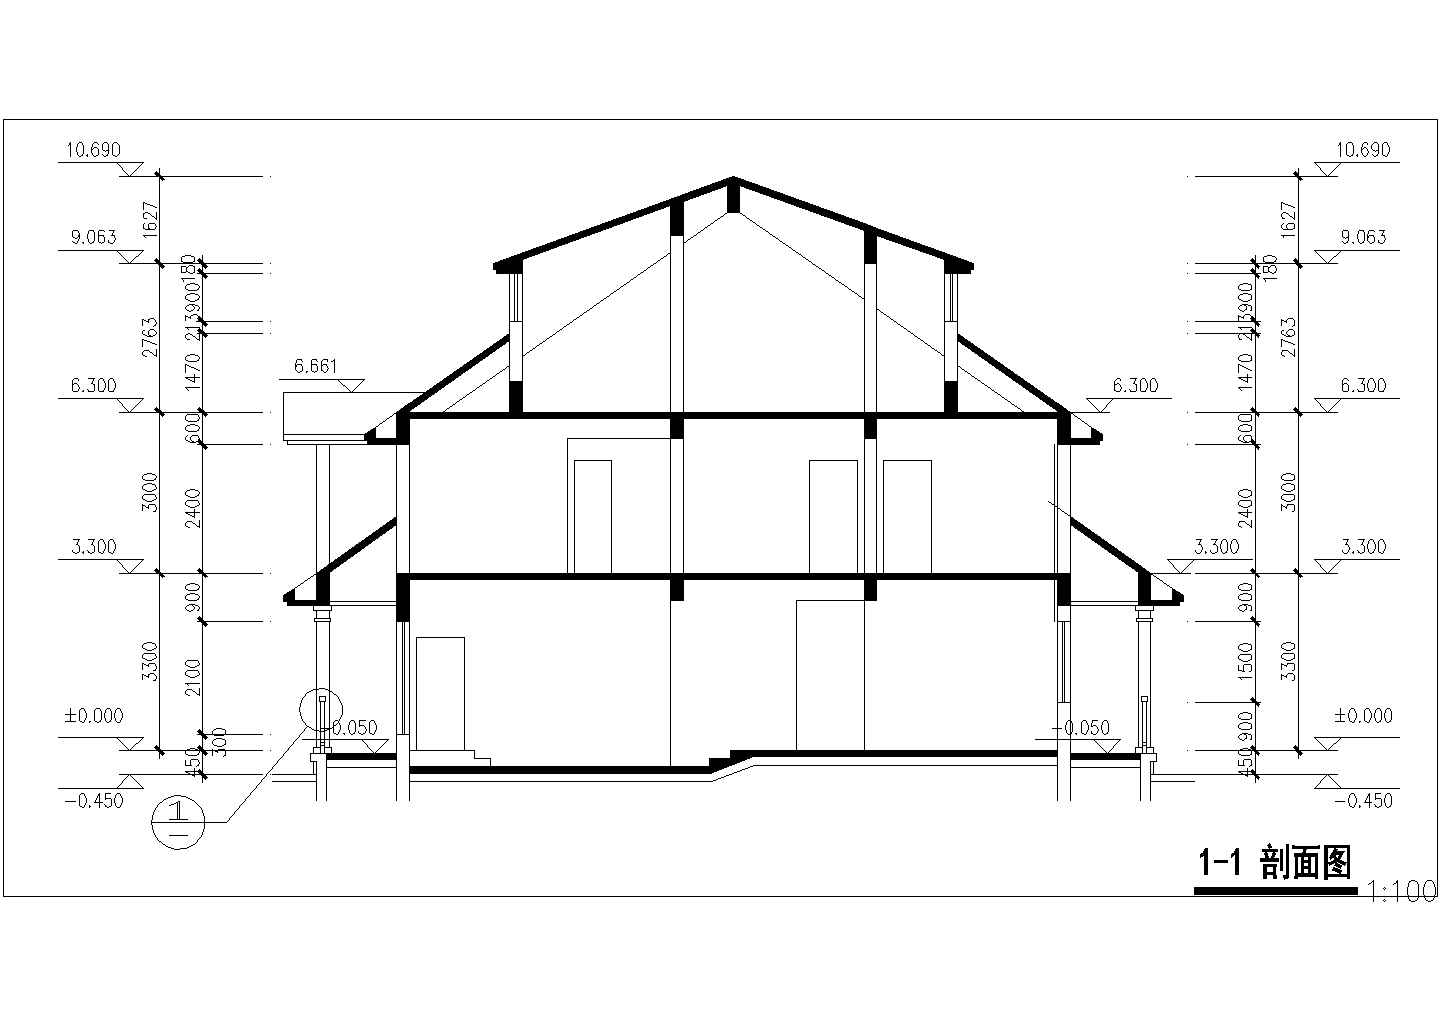 法式独栋二层半别墅详细建筑设计图